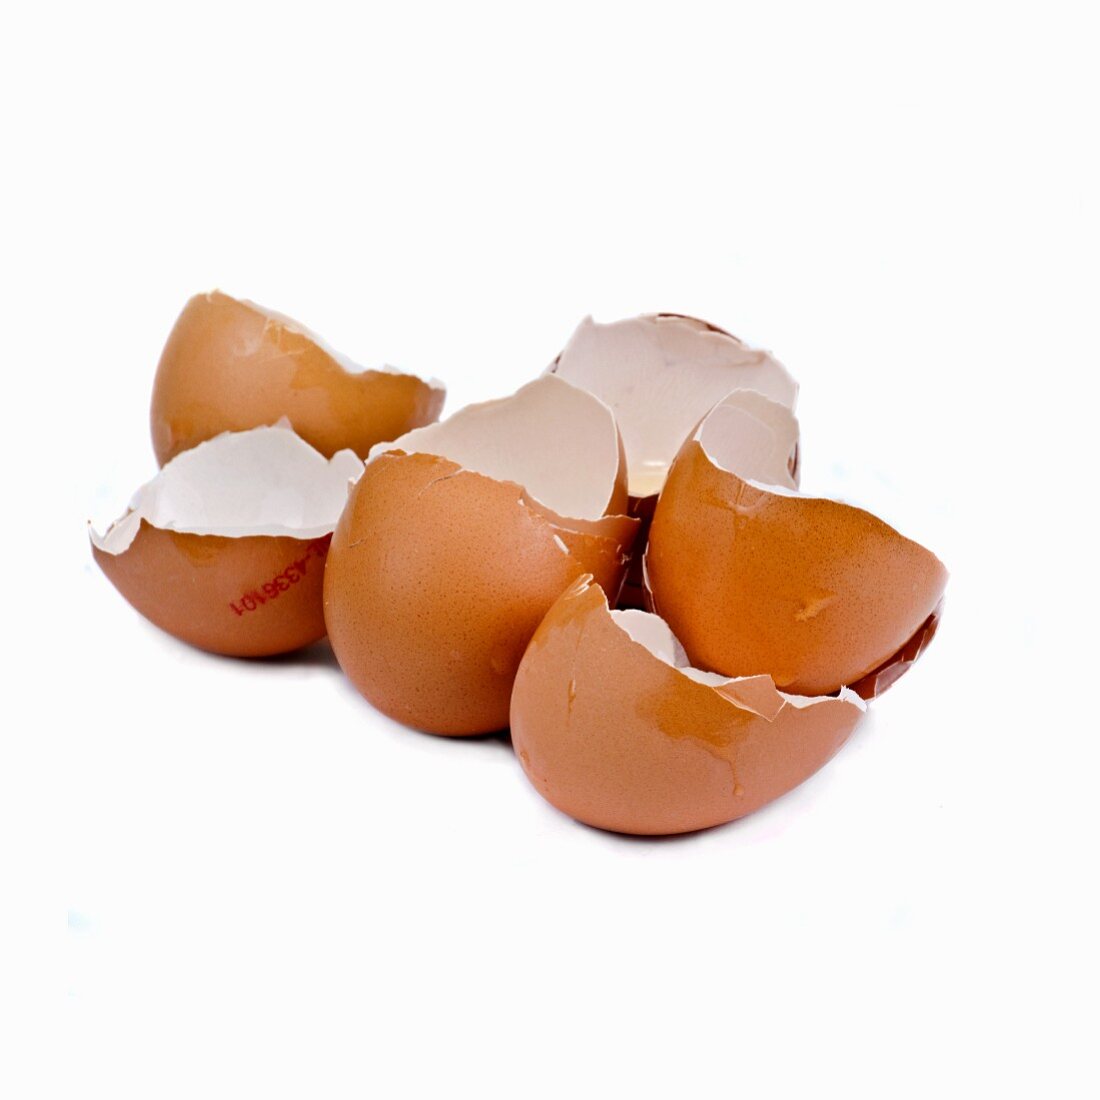 Several eggshells